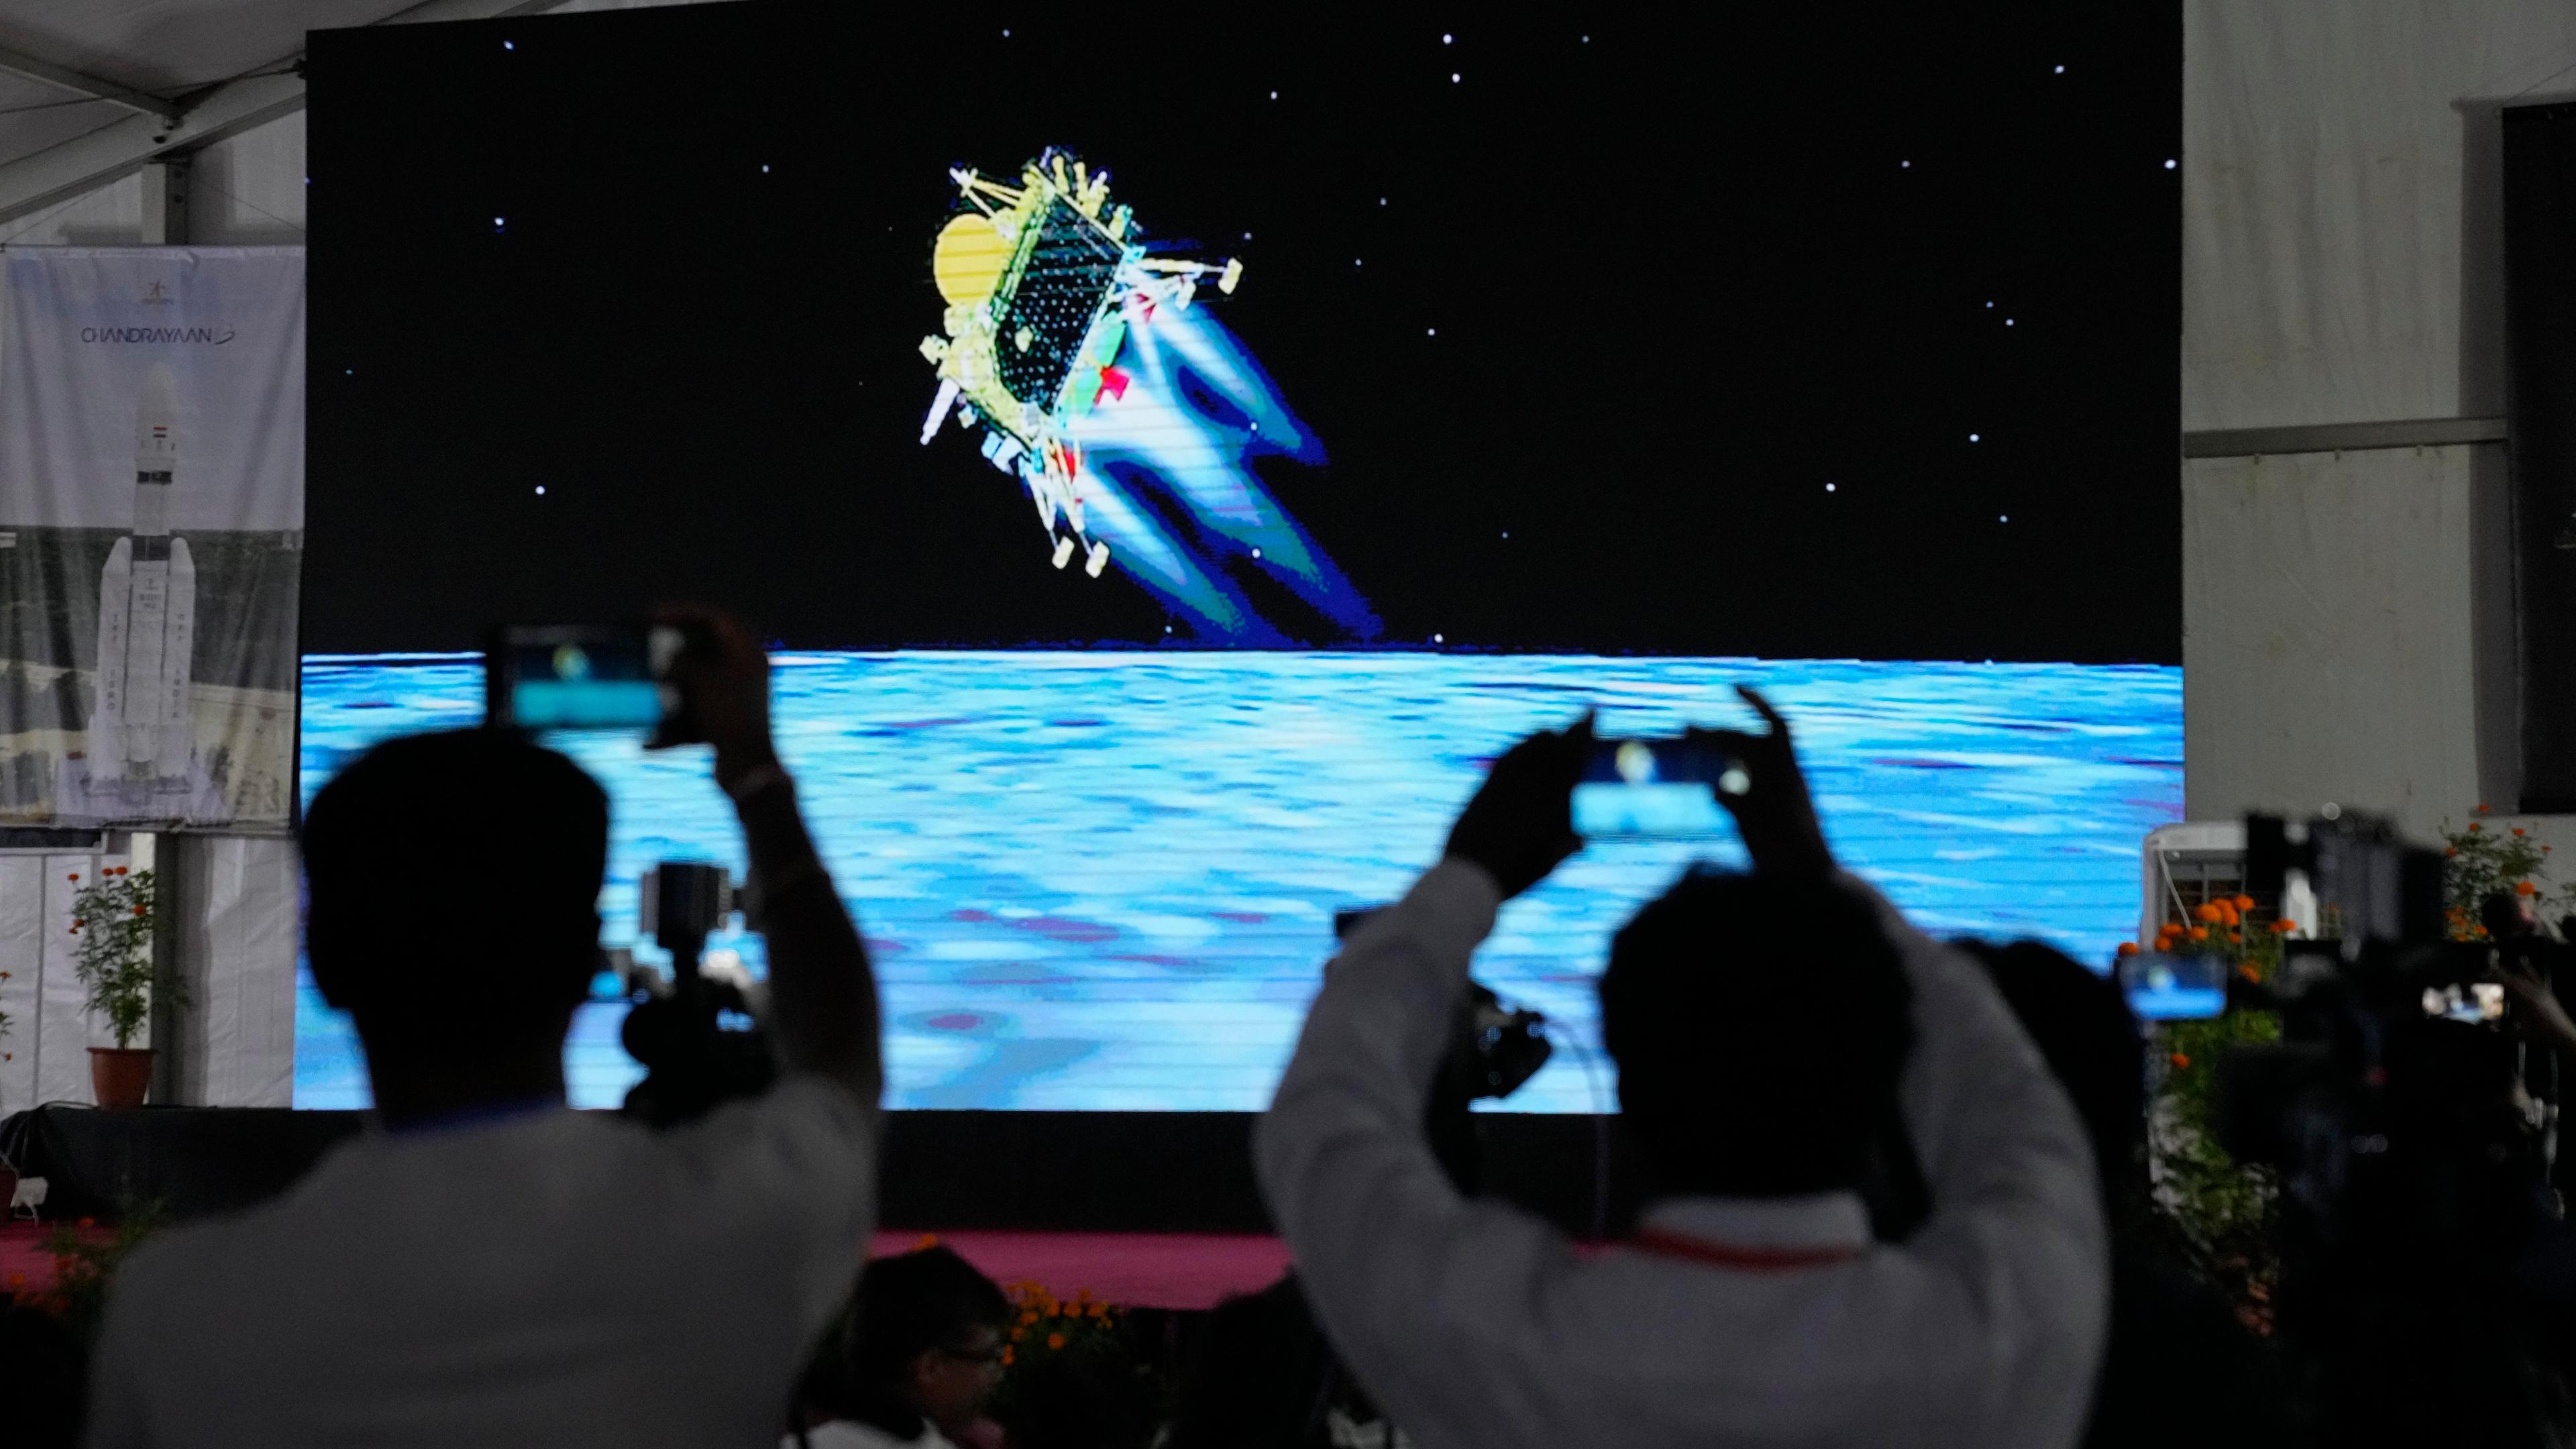 Indien landet erfolgreich auf dem Mond. Die Landung wurde live übertragen, wie auf dem Bild gezeigt.